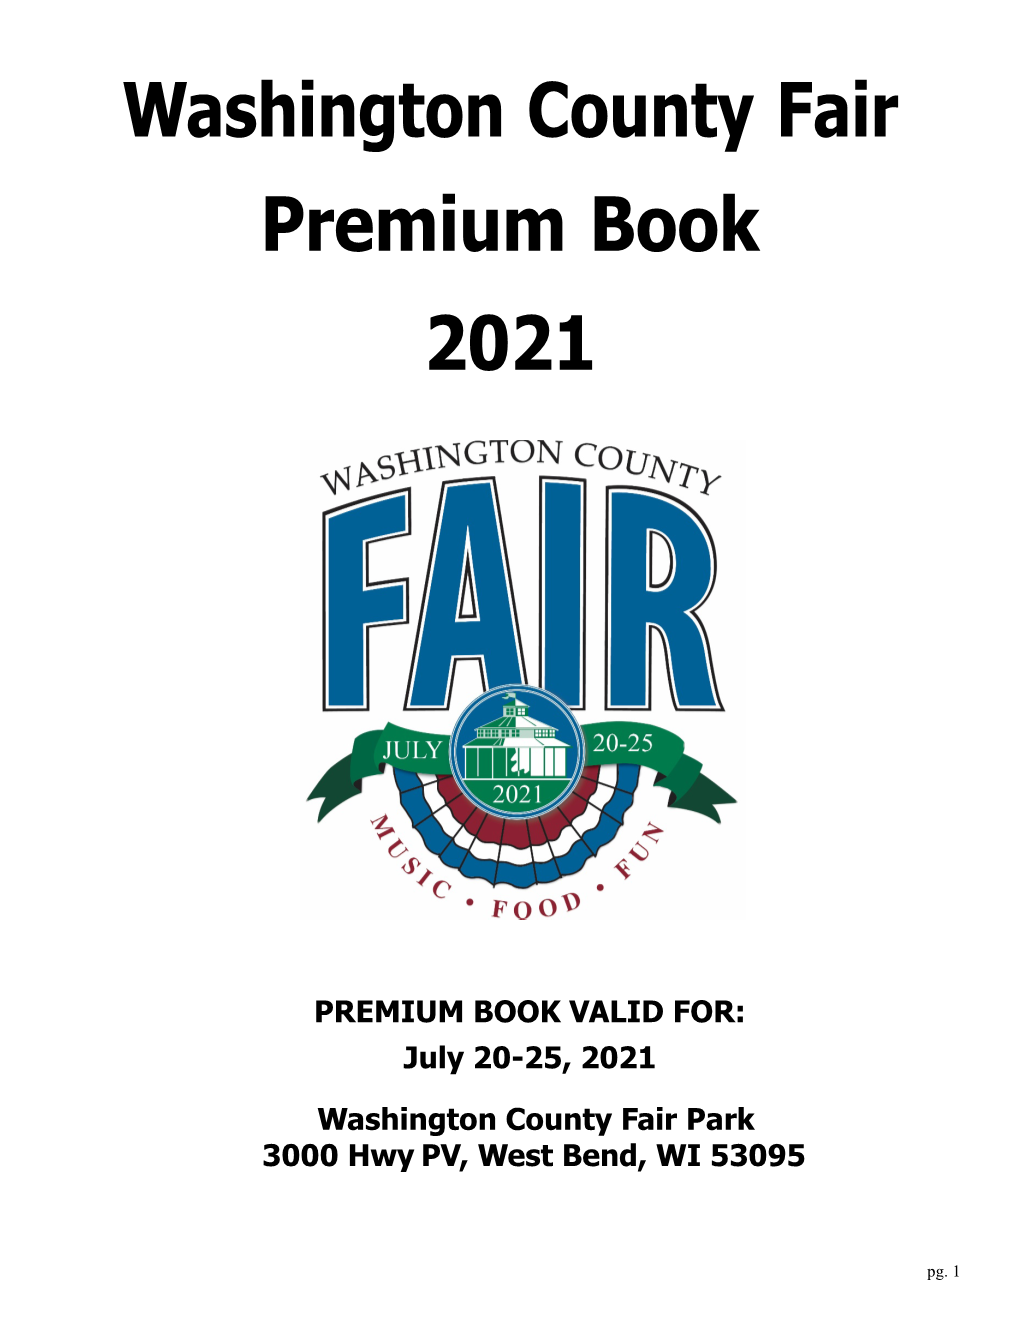 Washington County Fair Premium Book 2021